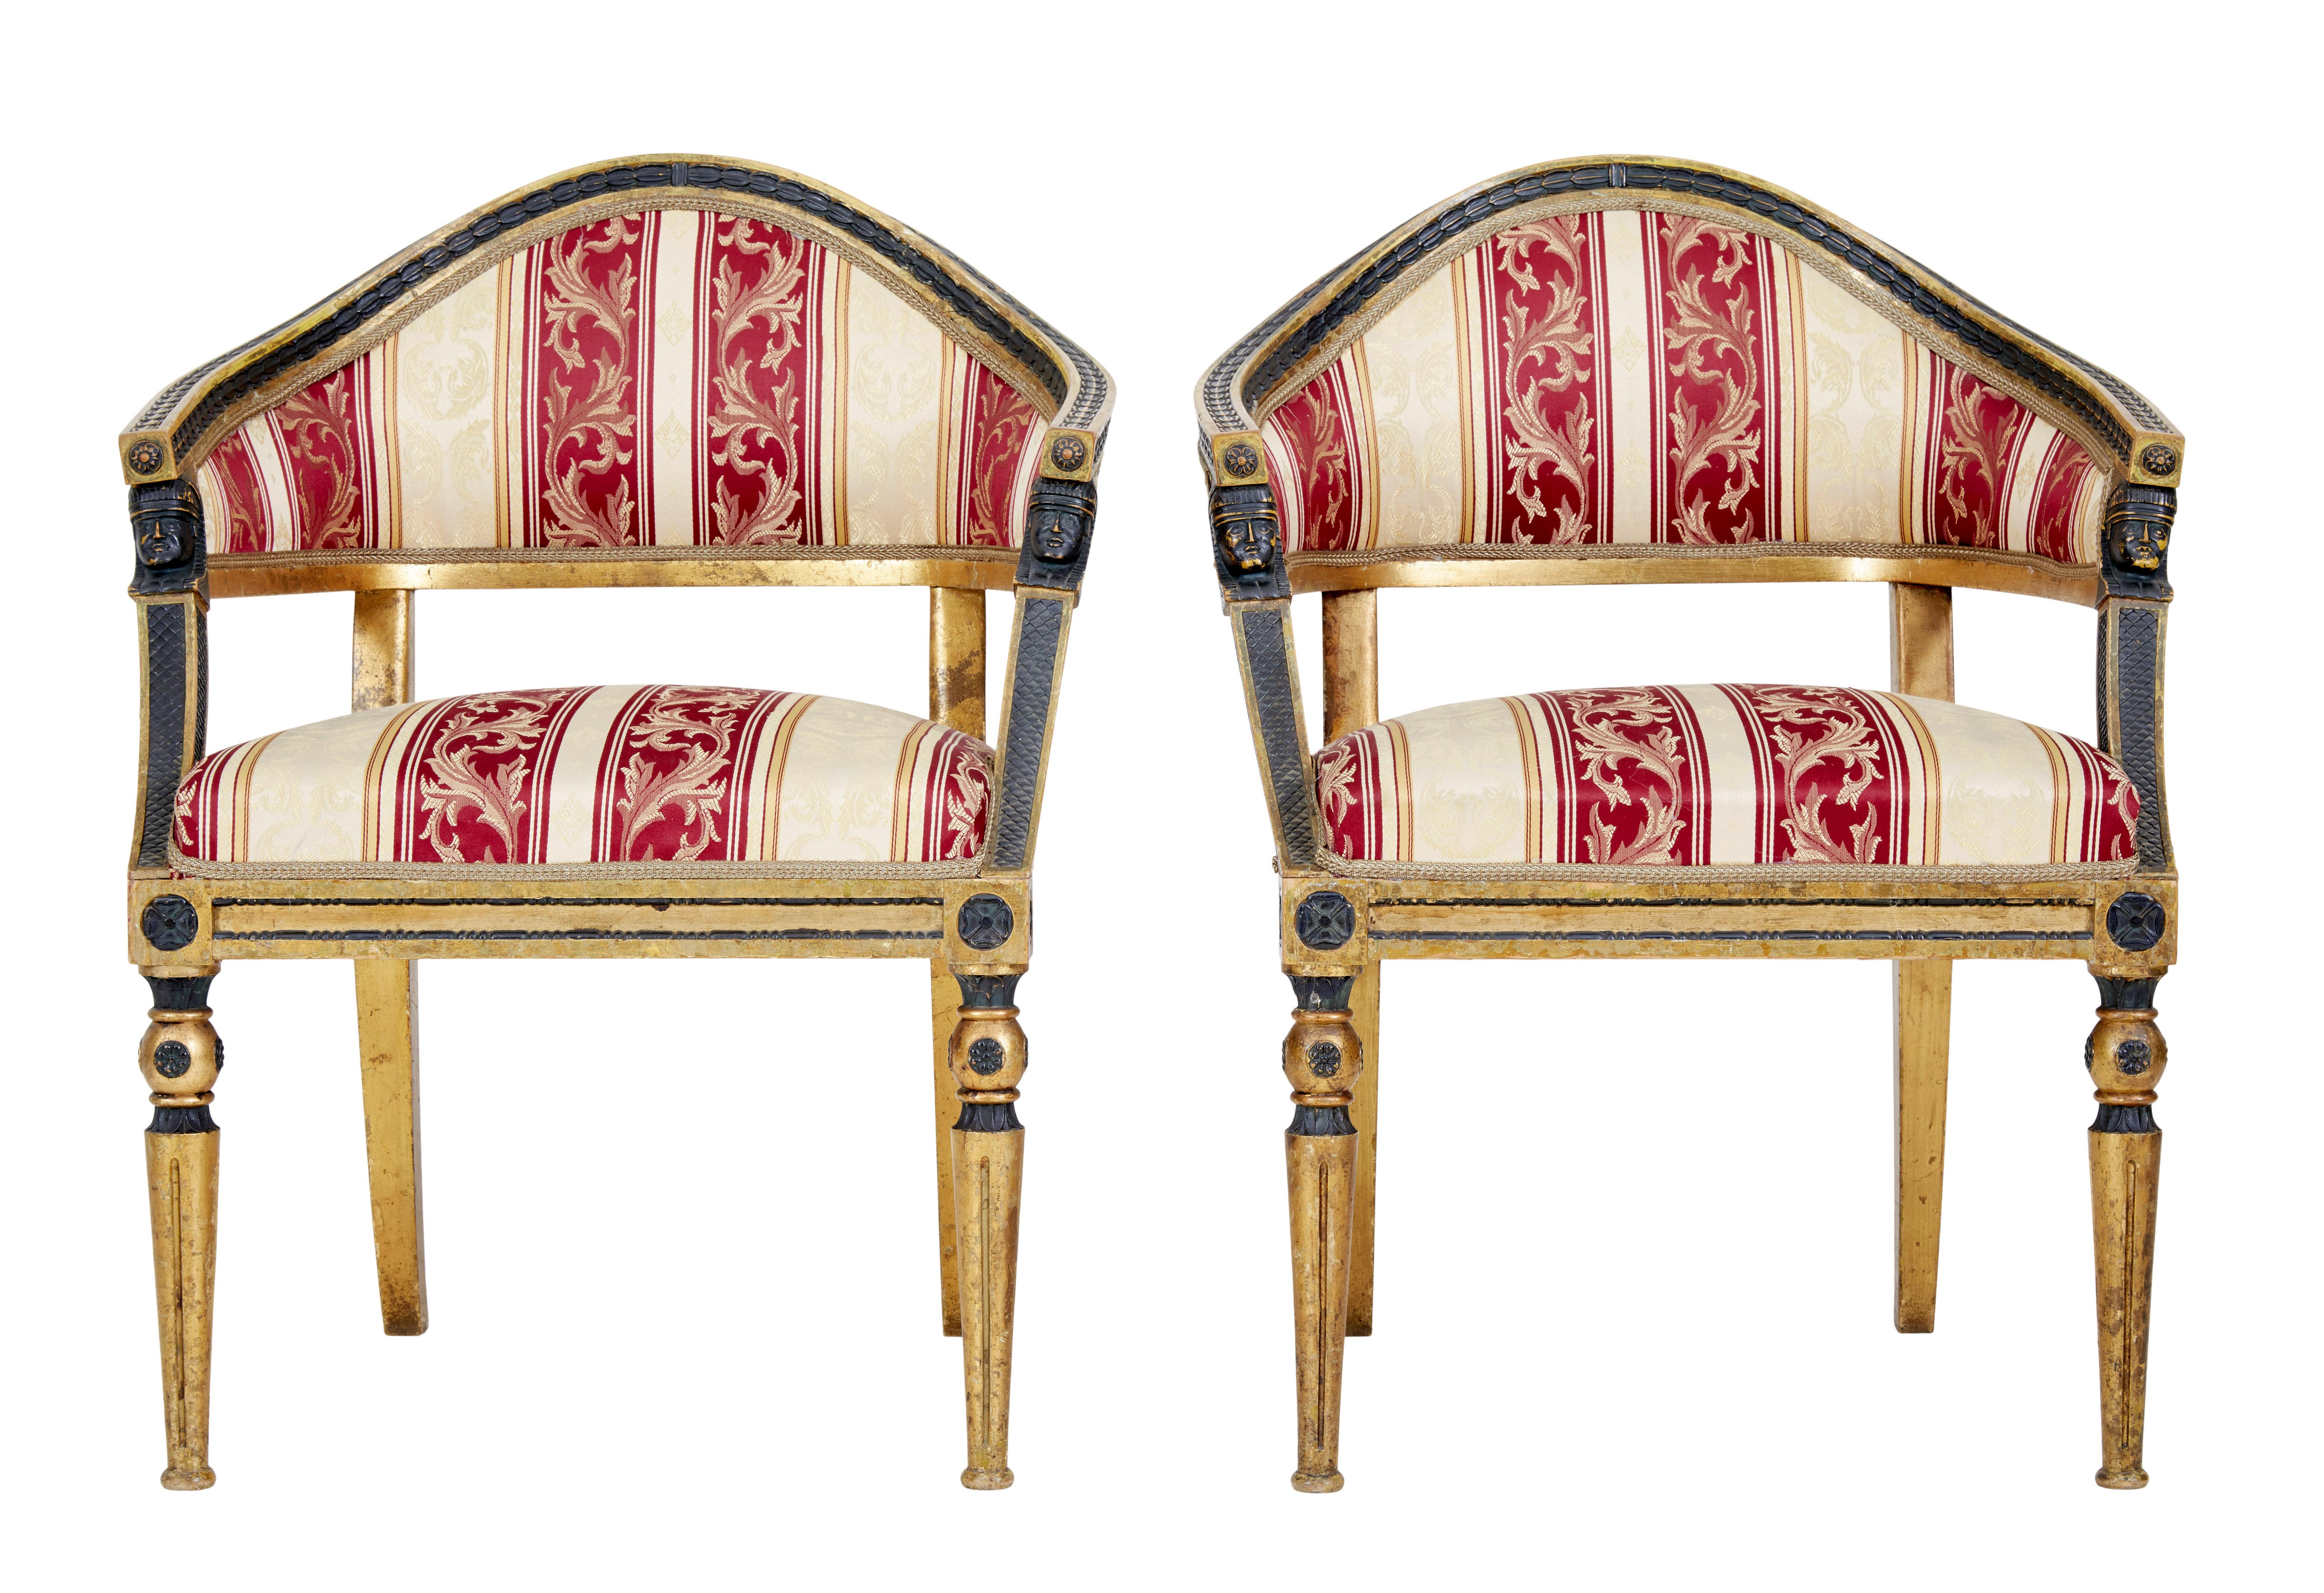 Paar schwedische vergoldete und ebonisierte Sessel aus dem 19. Jahrhundert, um 1860.

Zwei vergoldete Sessel mit geformter Rückenlehne von hoher Qualität. Ungewöhnlich geformte Rückseite mit ebonisierten Blattdetails, die mit der Vergoldung